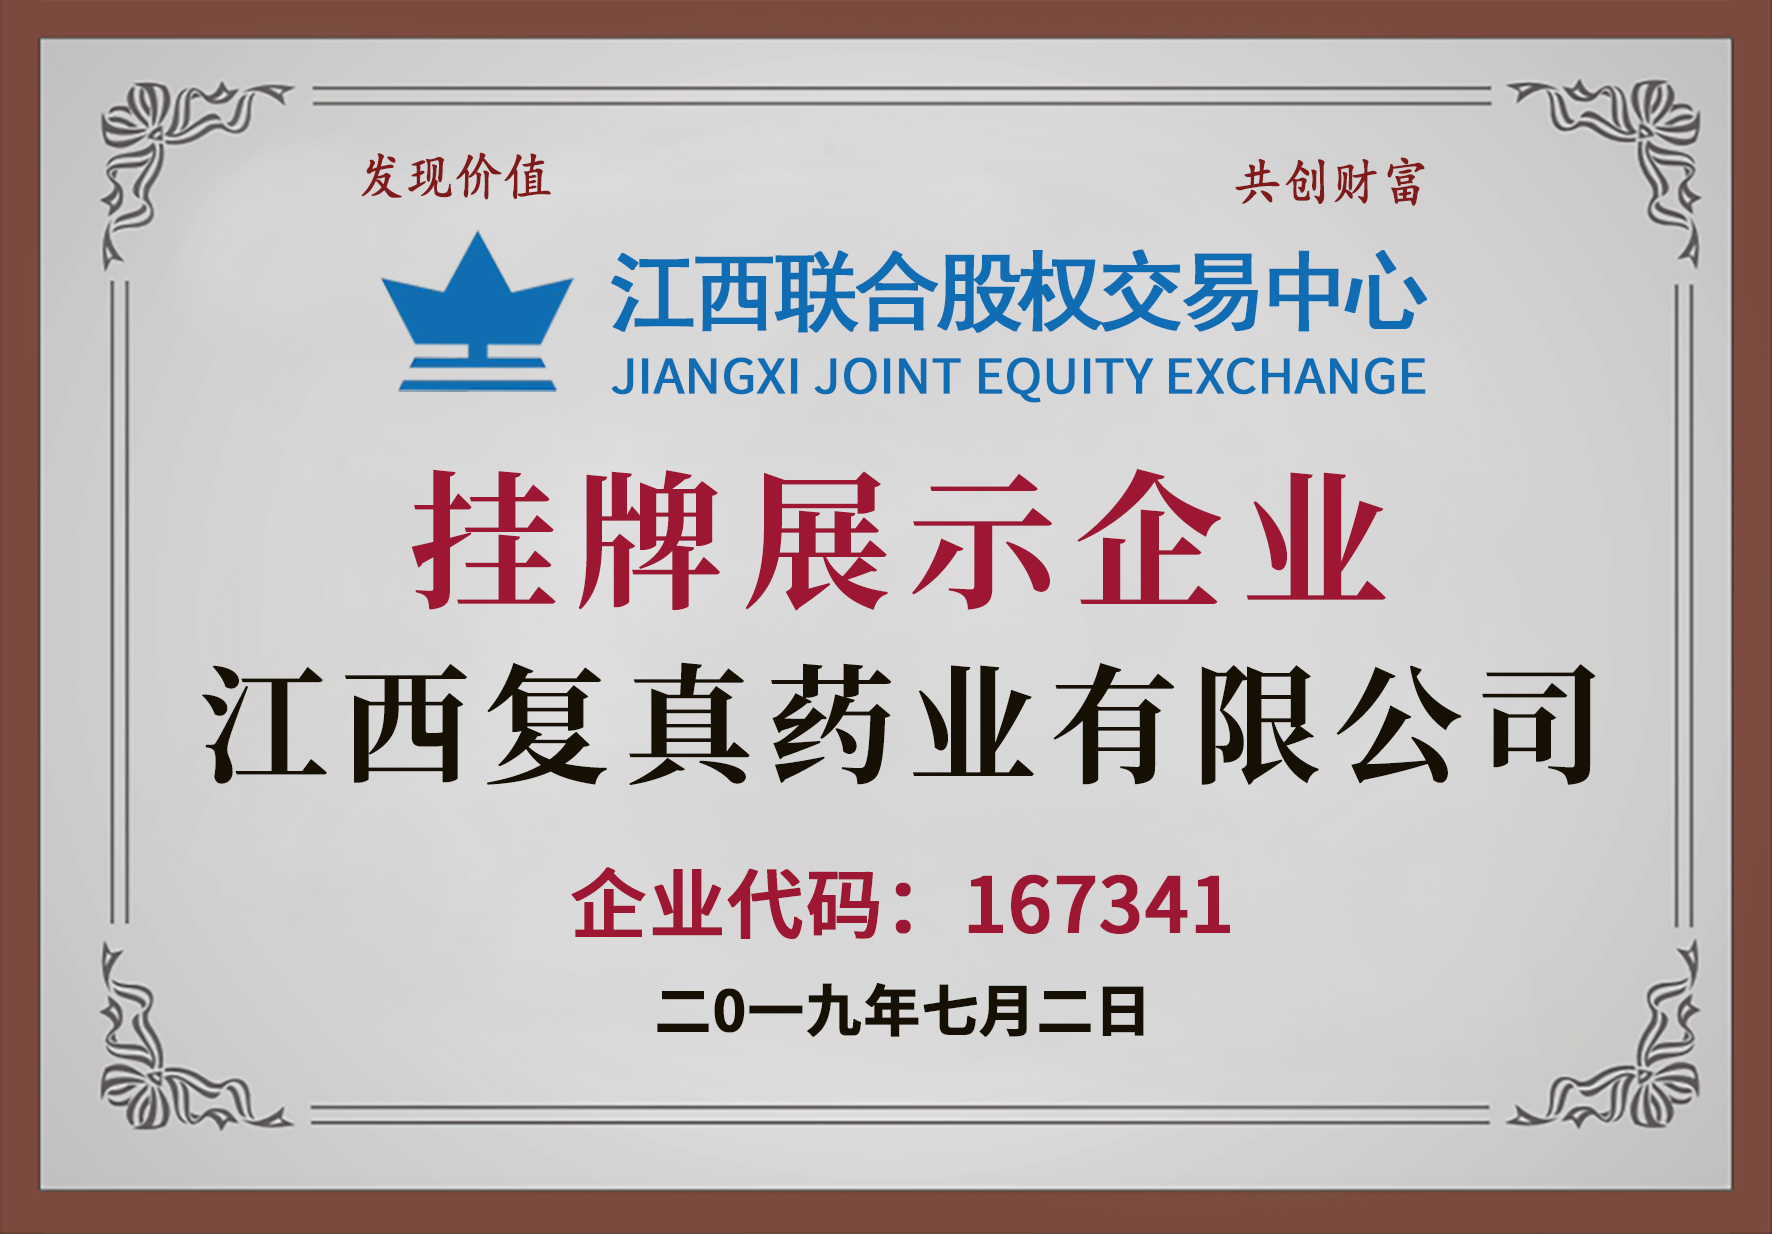 江西聯合股權交易中心掛牌展示企業